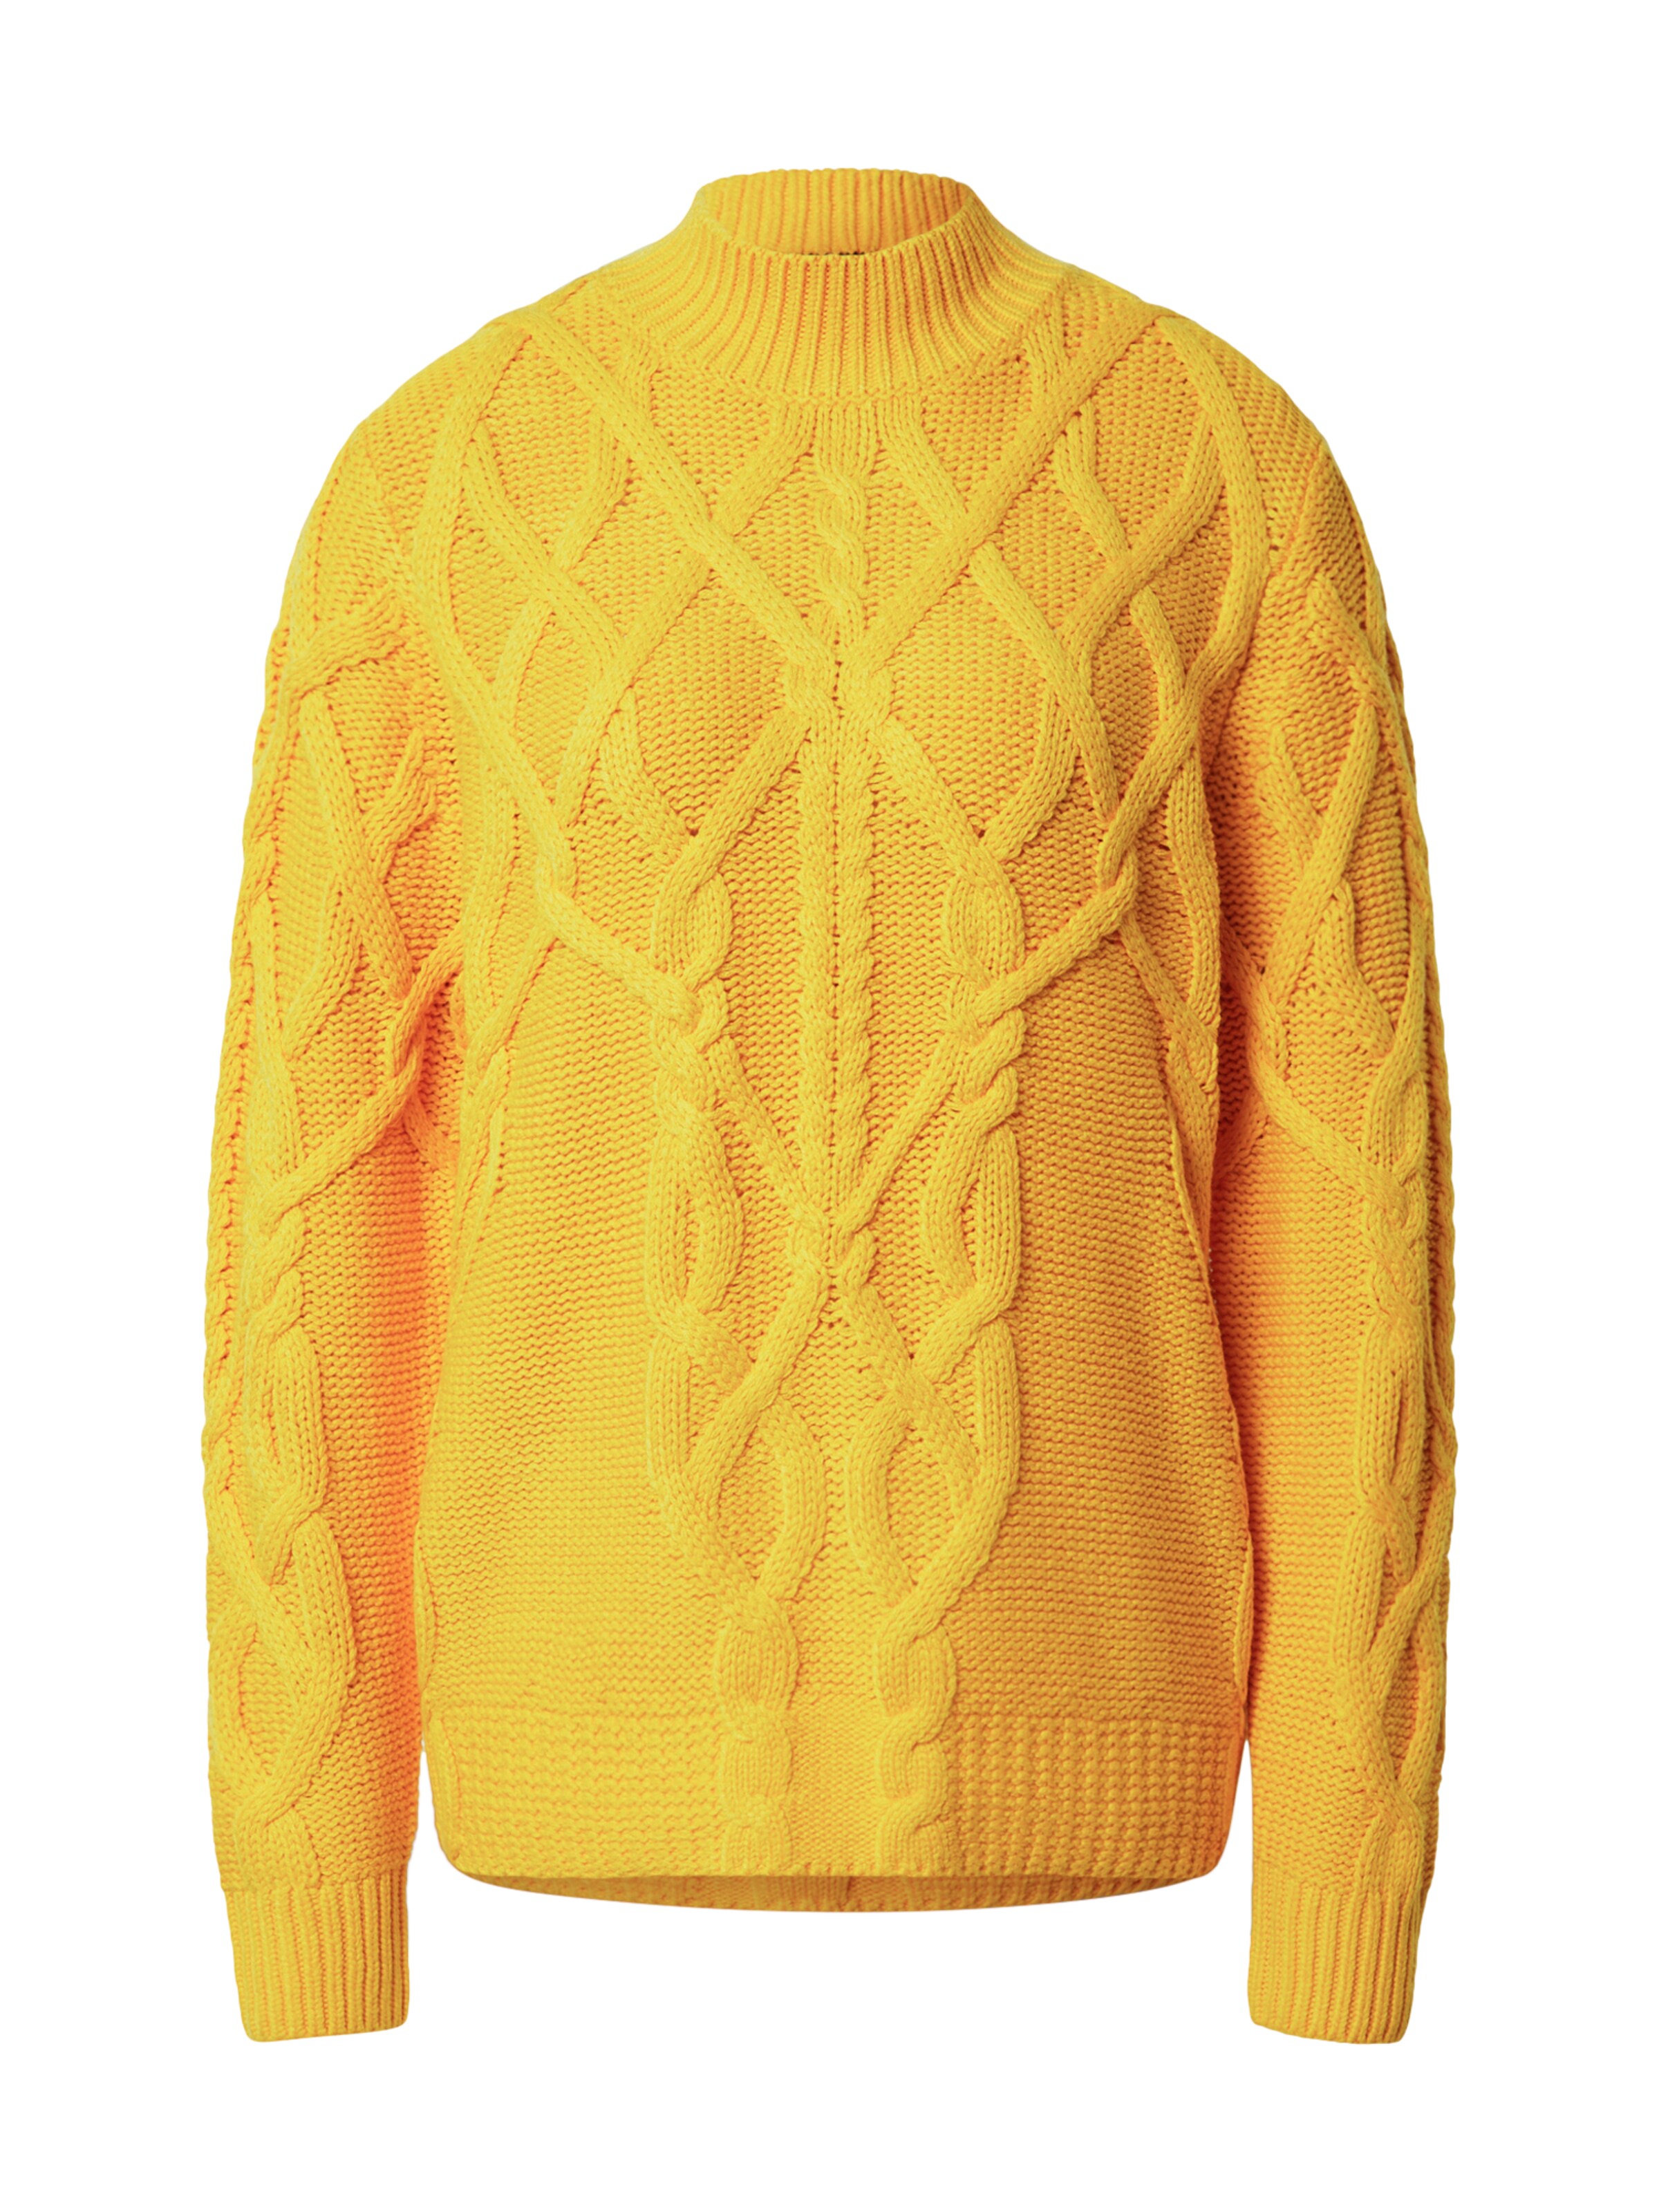 Rabatt 69 % Schwarz XL DAMEN Pullovers & Sweatshirts Pullover Basisch Hilfiger Pullover 